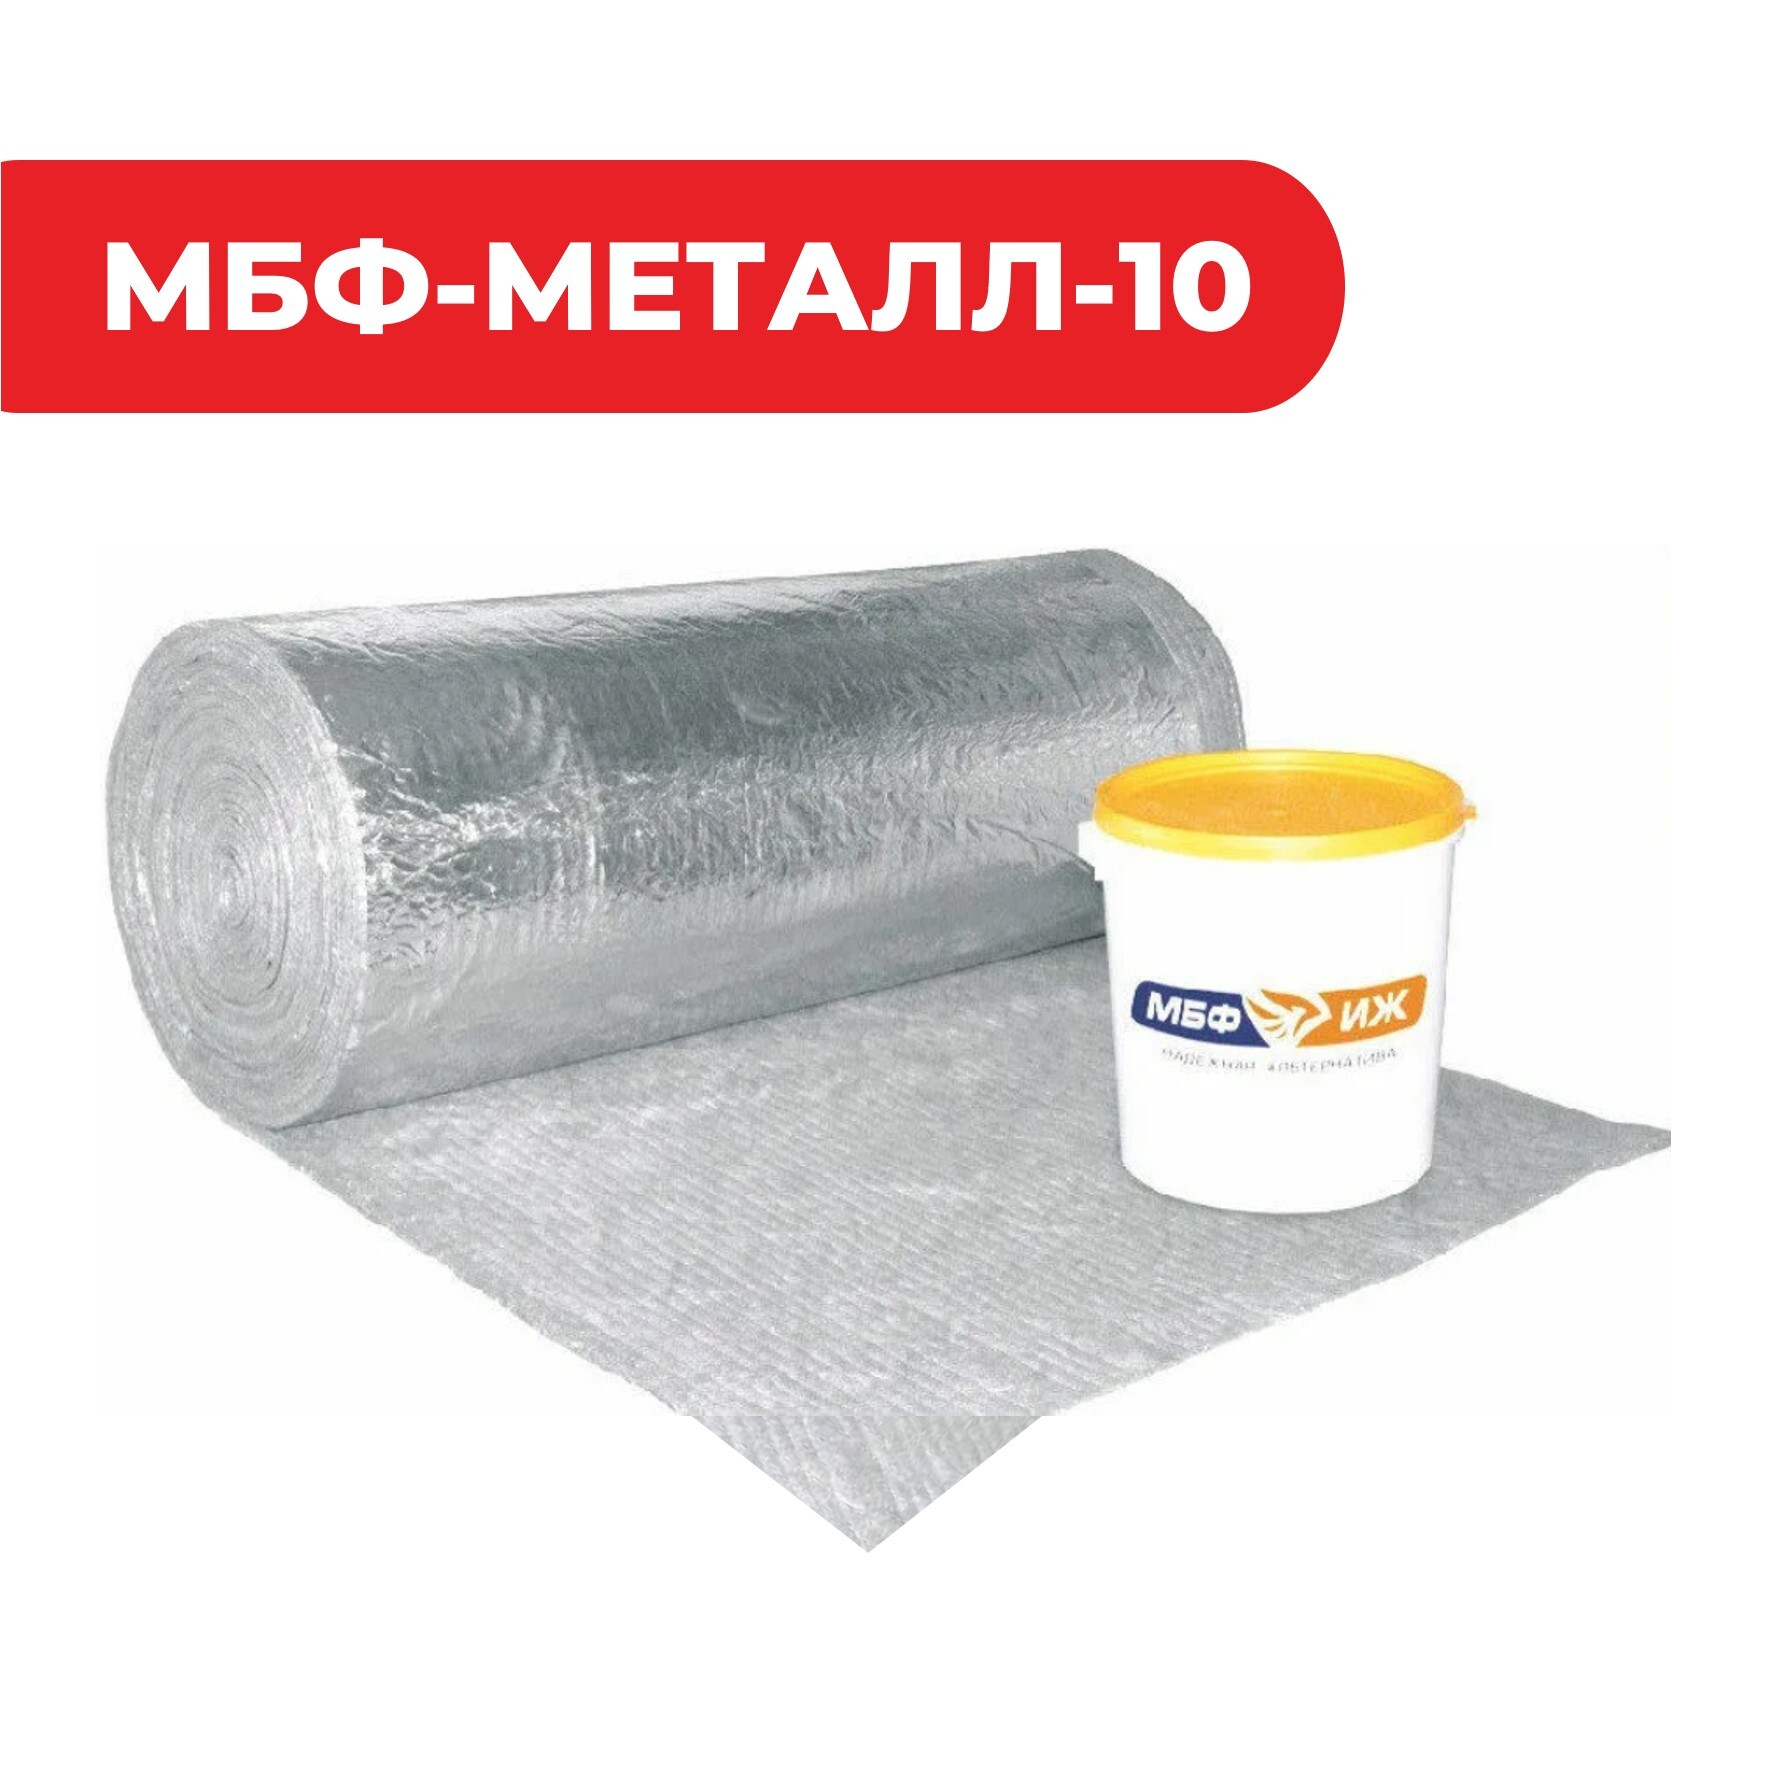 Конструктивная система огнезащиты металлоконструкций «МБФ-МЕТАЛЛ-10» (2 слоя)